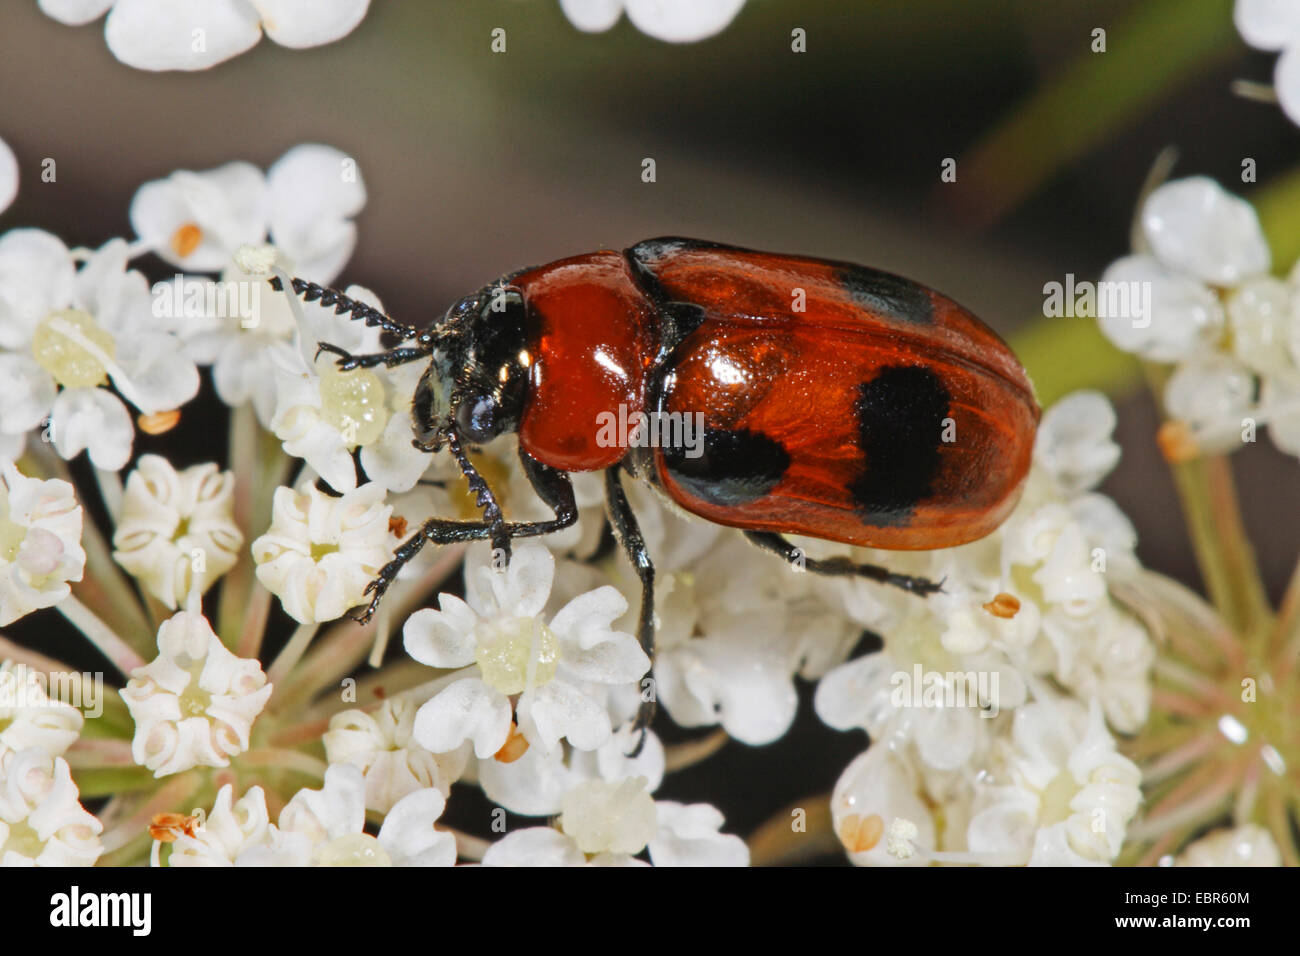 Leaf beetle (Coptocephala rubicunda), on white flowers, Germany Stock Photo